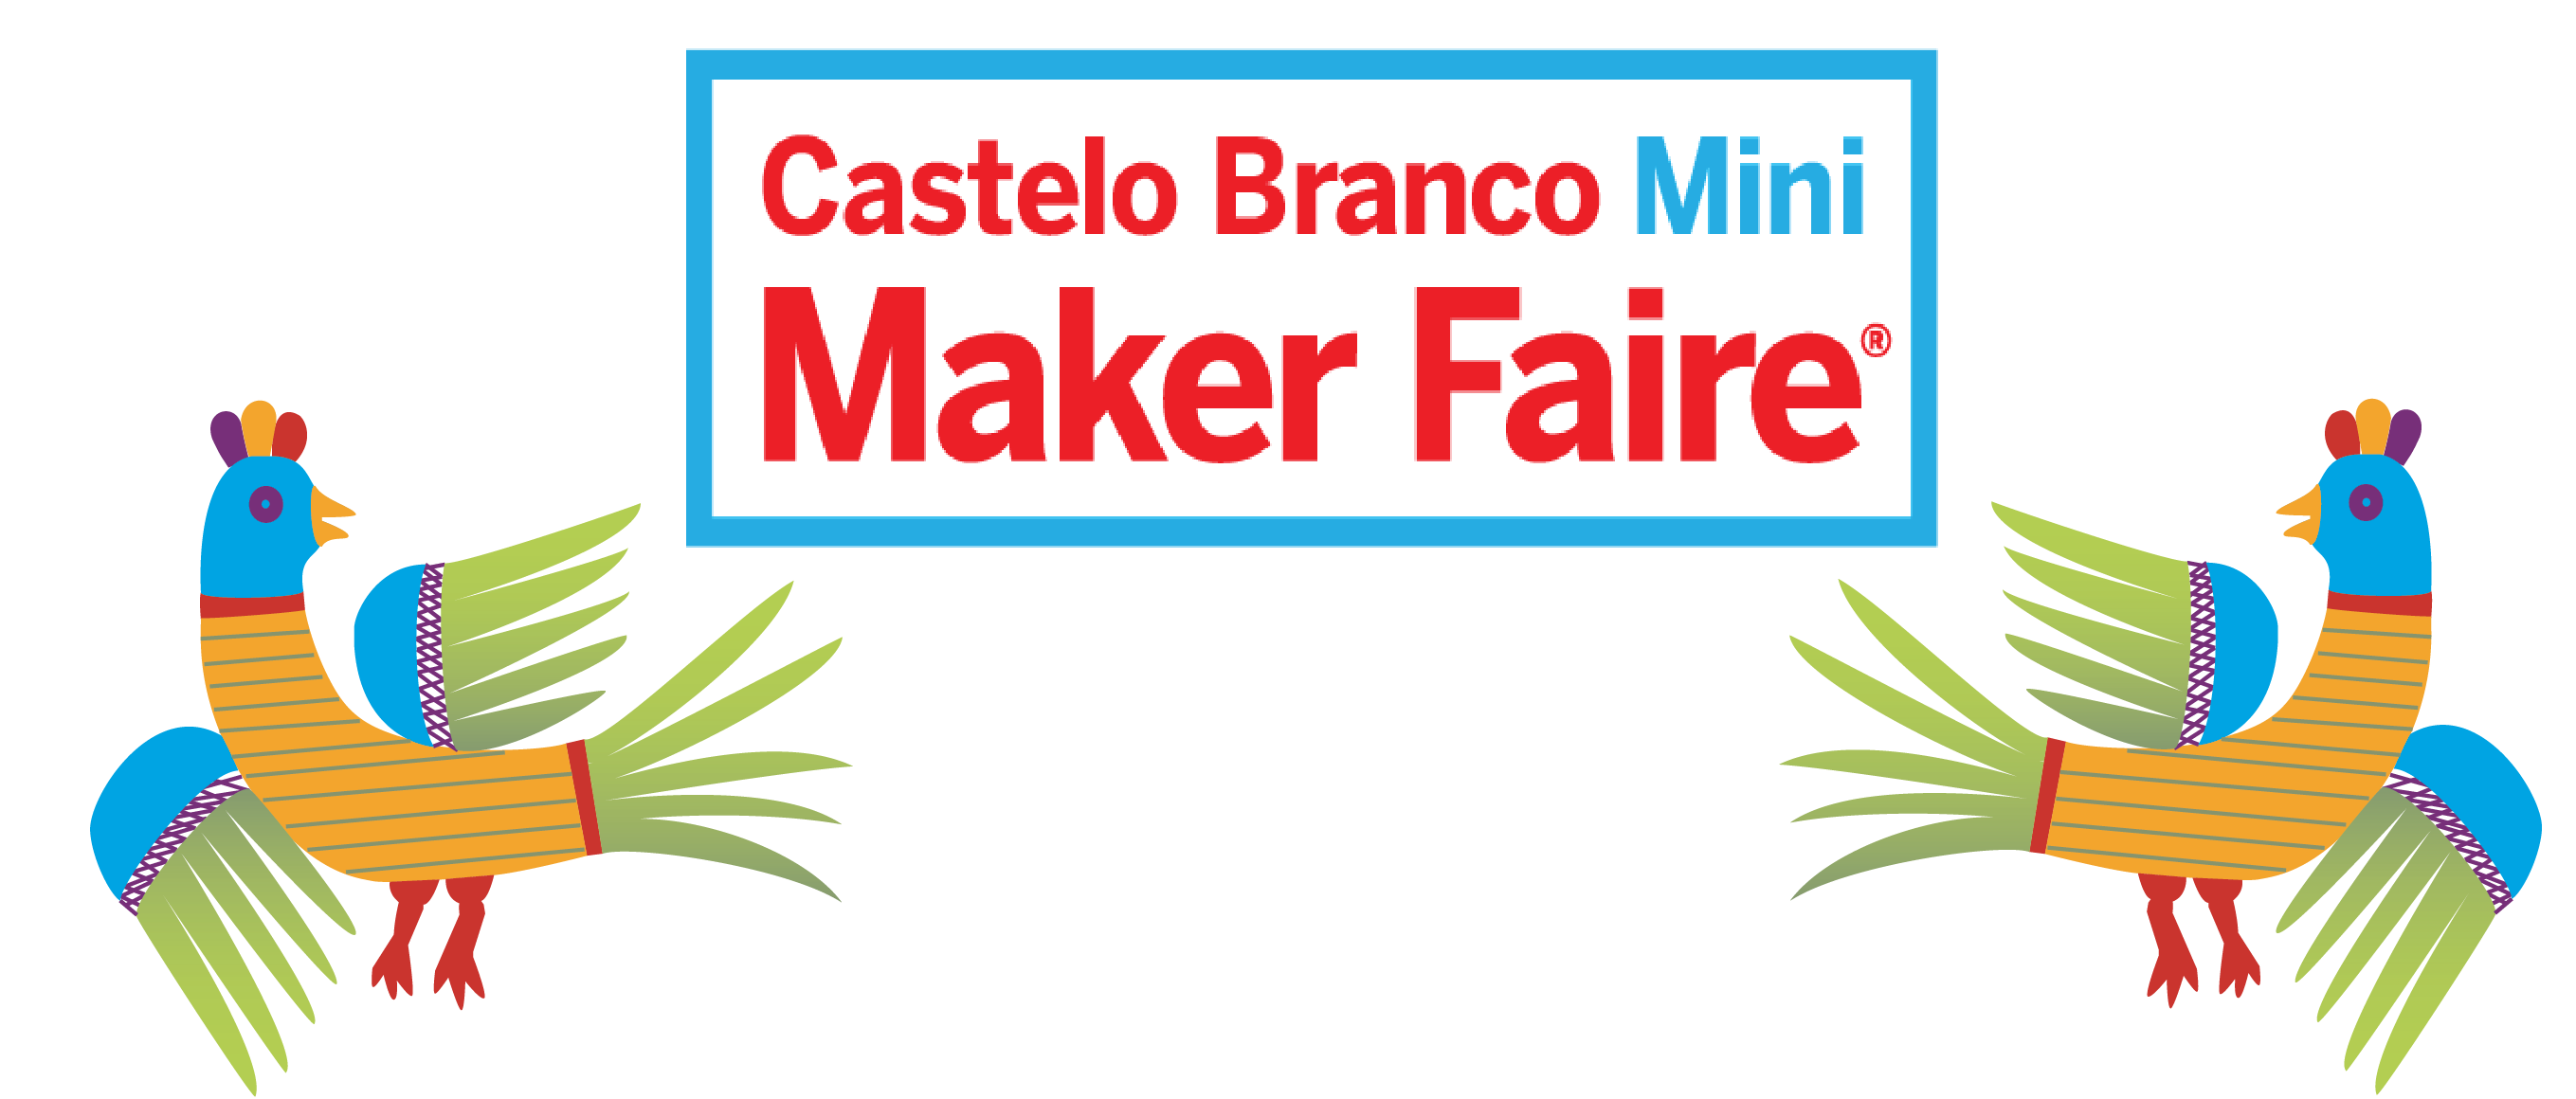 Mini Maker Faire Castelo Branco